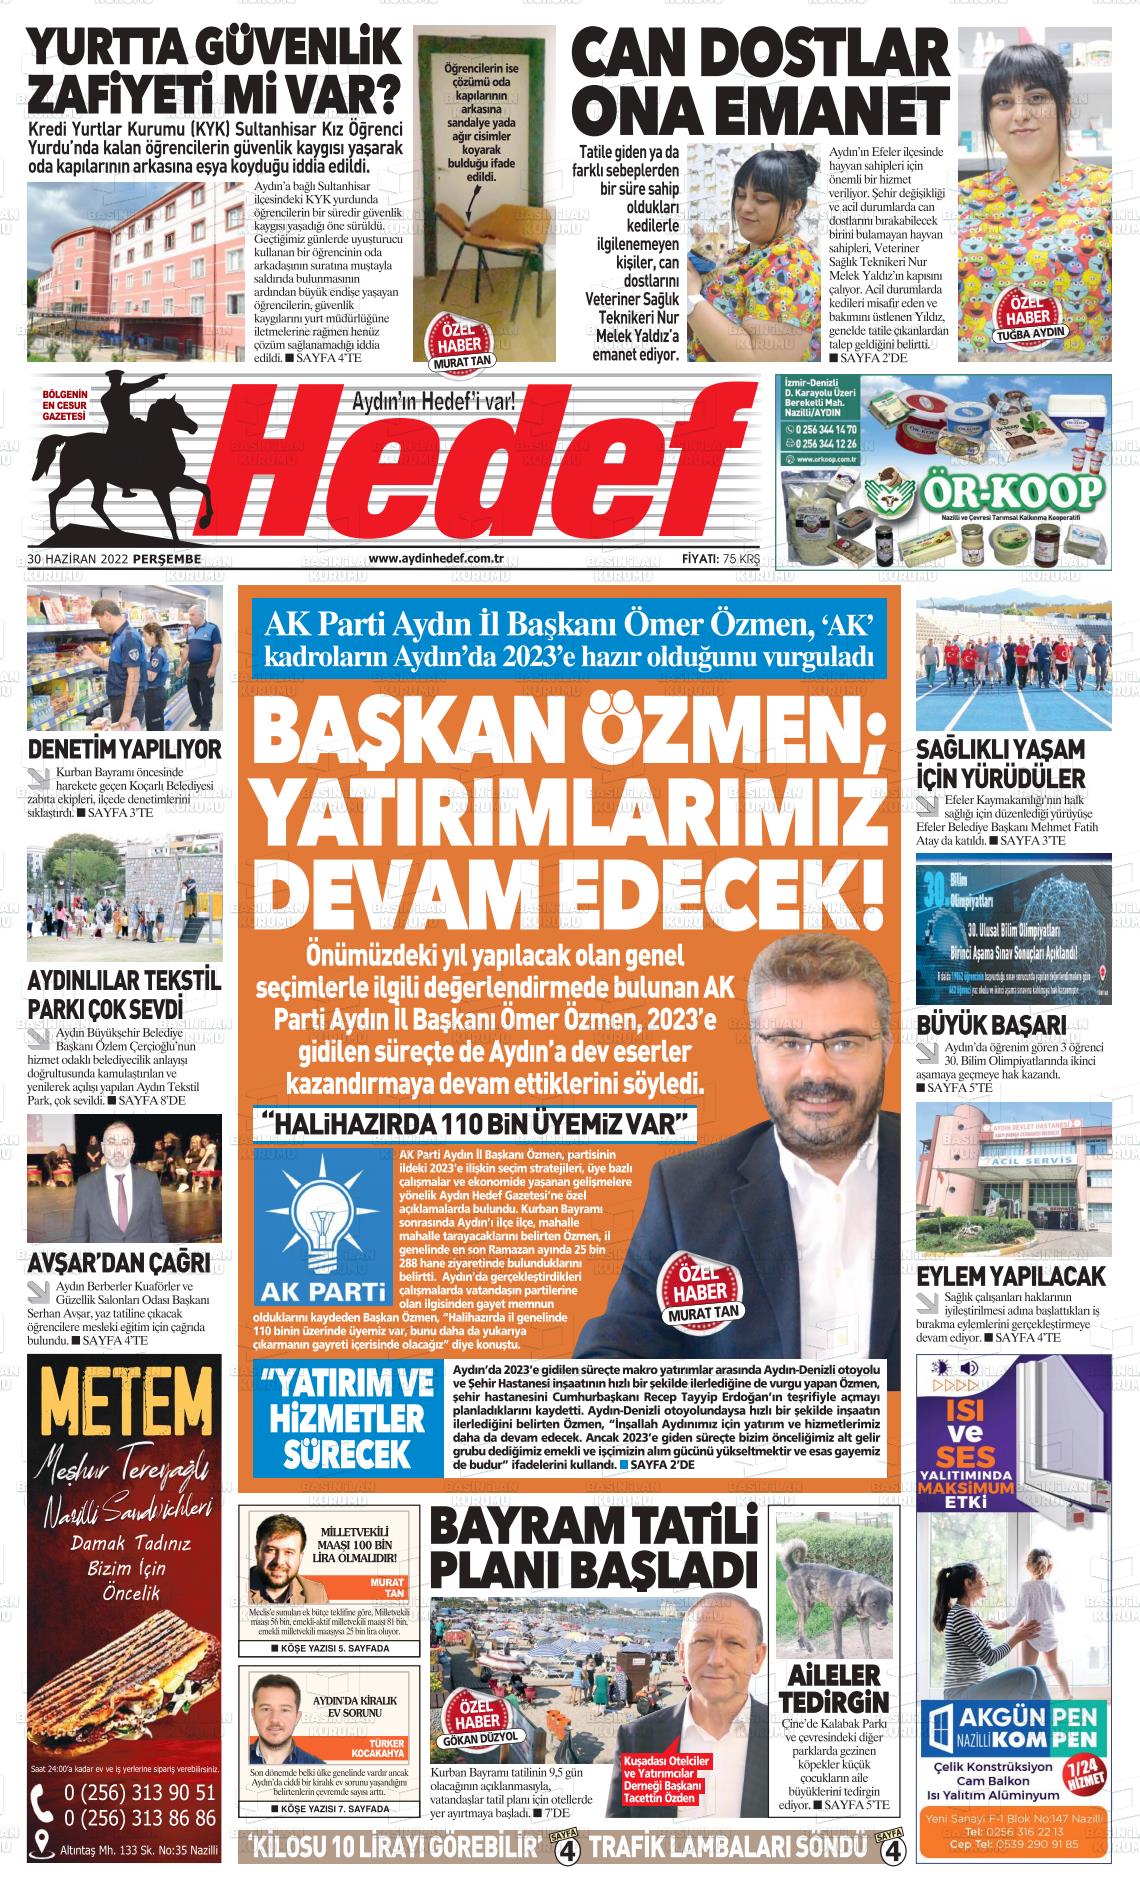 30 Haziran 2022 Aydın Hedef Gazete Manşeti